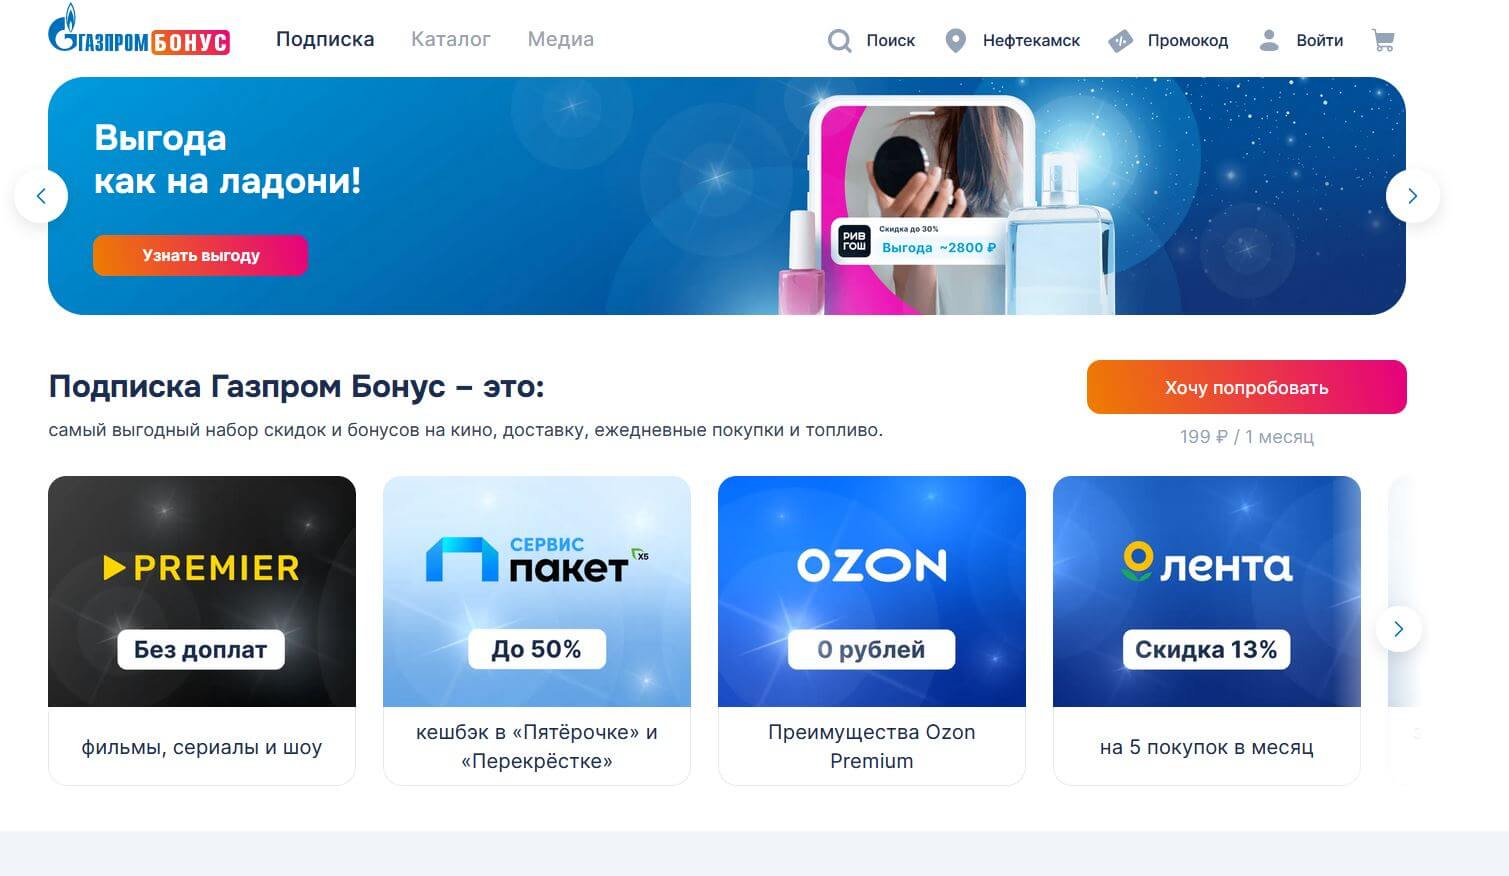 Что входит в подписку Газпром Бонус. Подписка на Газпром Бонус дает массу преимуществ и включает в себя несколько сервисов. Фото.